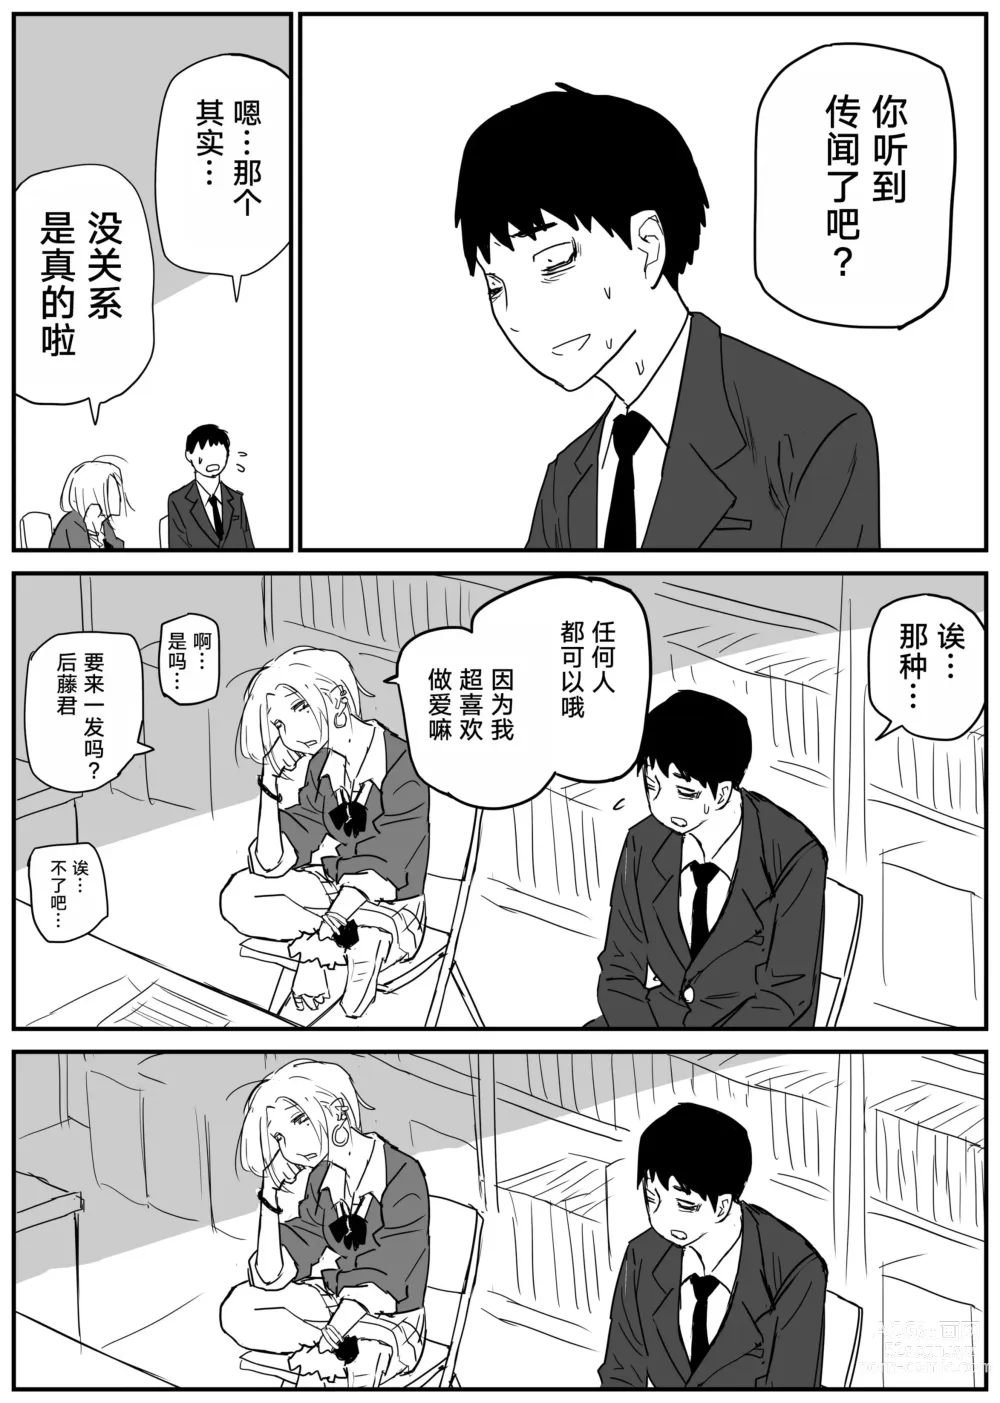 Page 27 of doujinshi Gal JK Ero Manga Ch.1-27